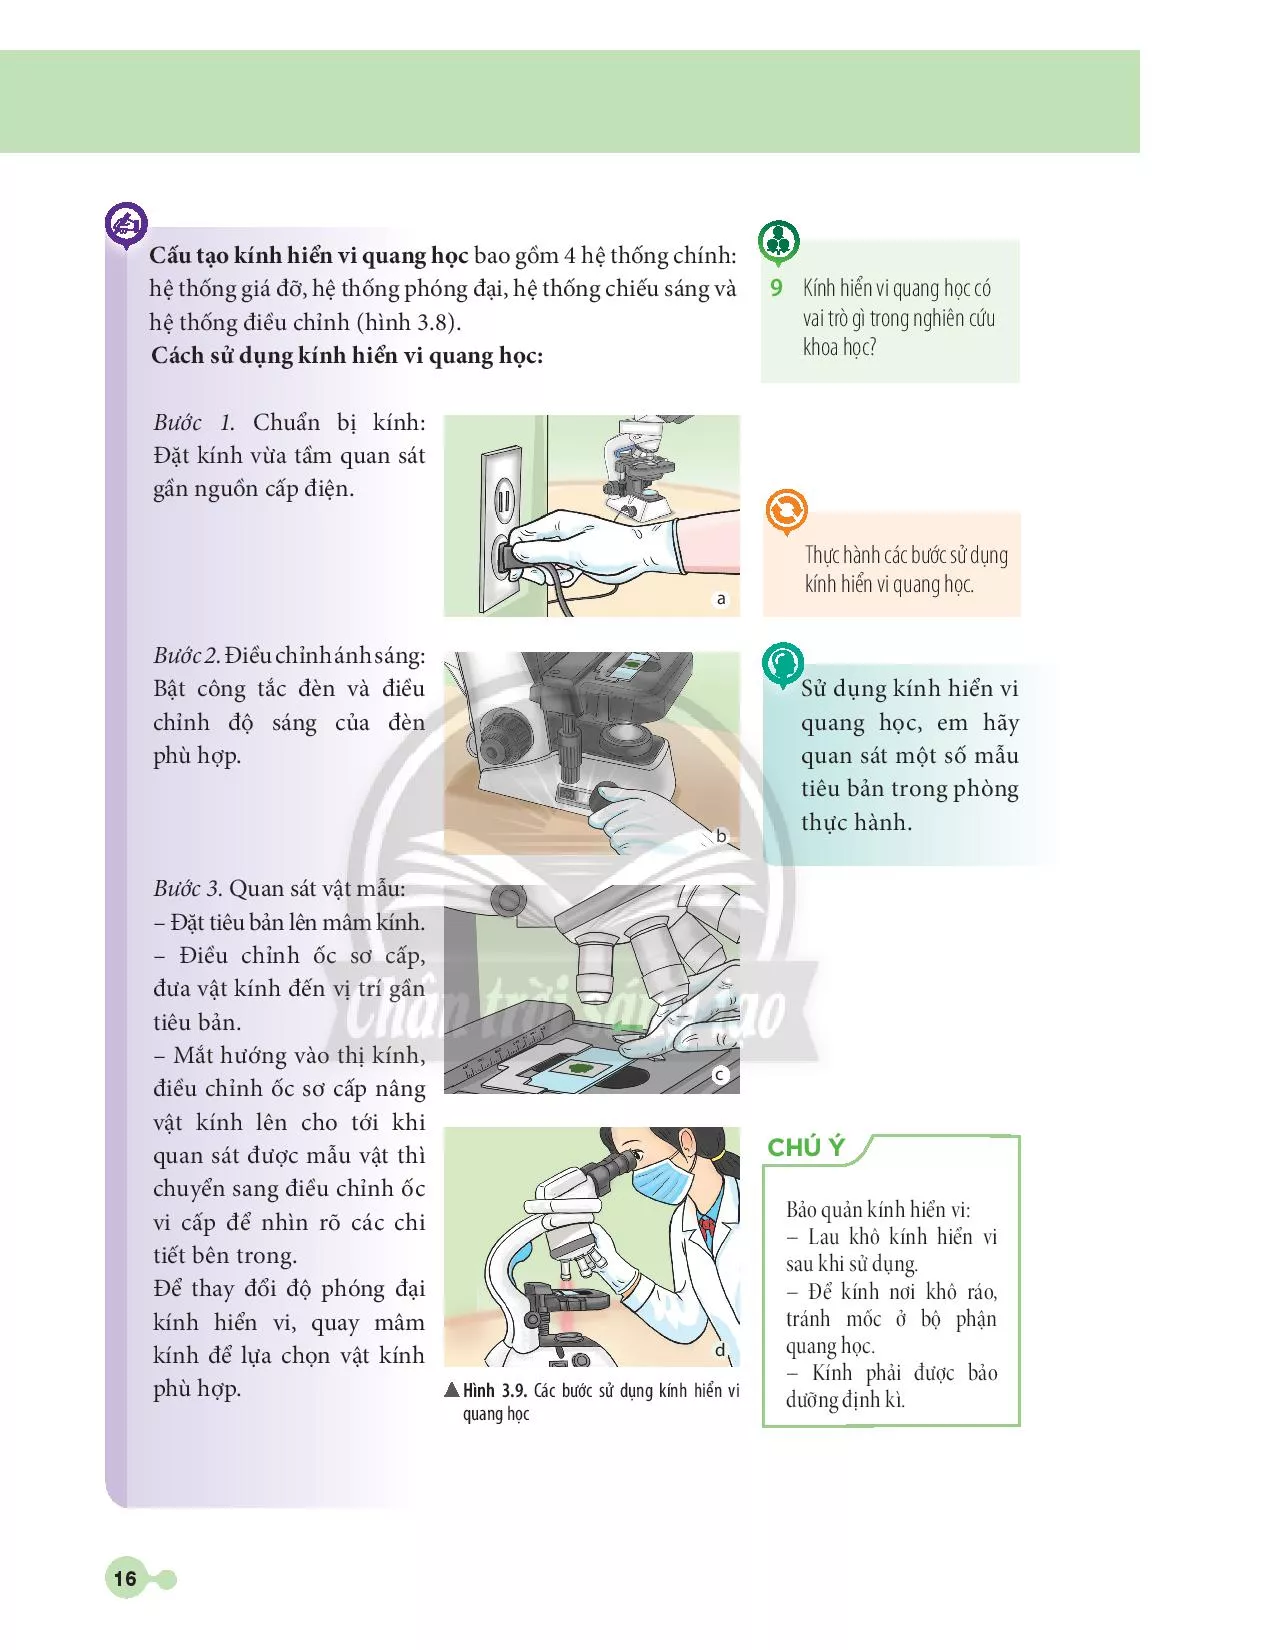 BÀI 3: Quy định an toàn trong phòng thực hành. Giới thiệu một số dụng cụ đo - Sử dụng kính lúp và kính hiển vi quang học 